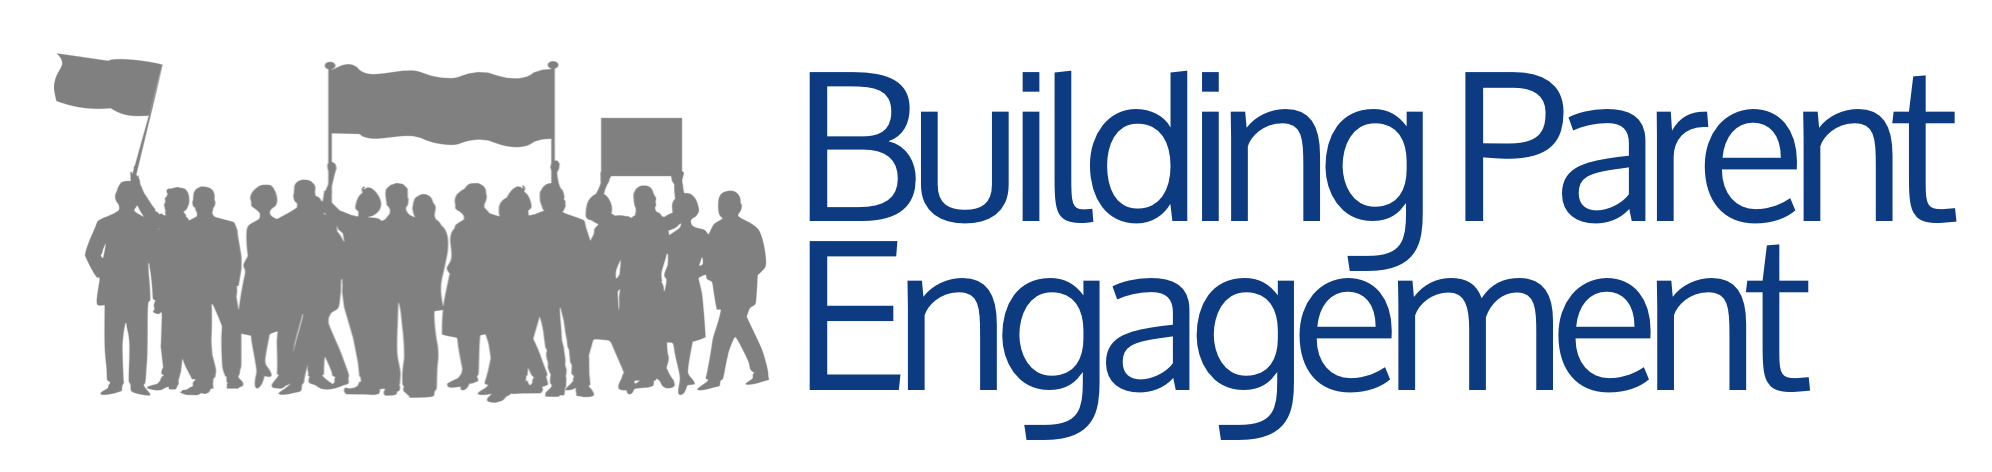 Building Parent Engagement Logo.png